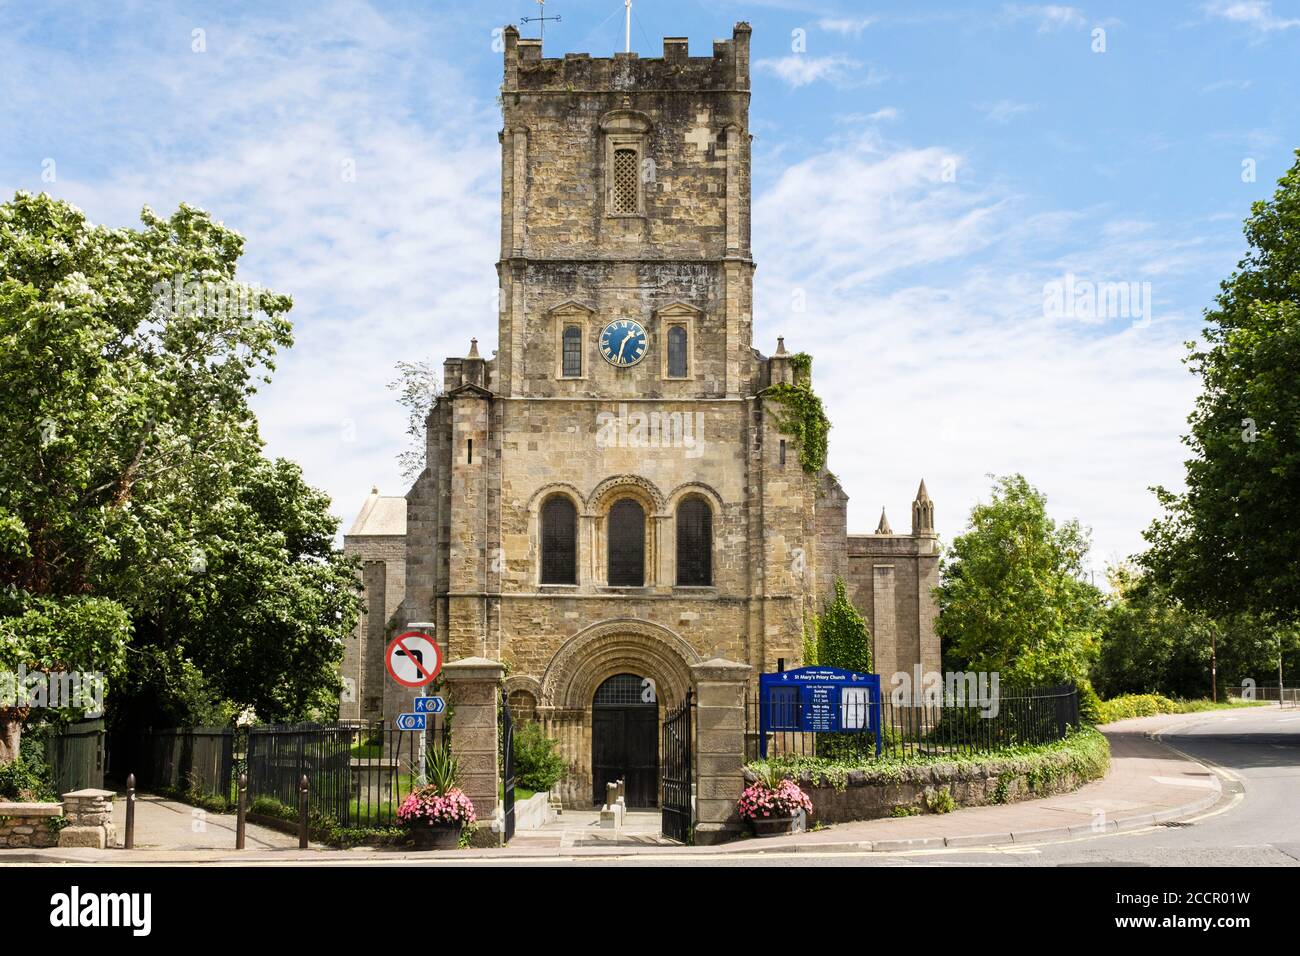 Église du Prieuré de Sainte-Marie avec porte normande datant du XIIe siècle. Chepstow, Monbucshire, pays de Galles, Royaume-Uni, Grande-Bretagne Banque D'Images